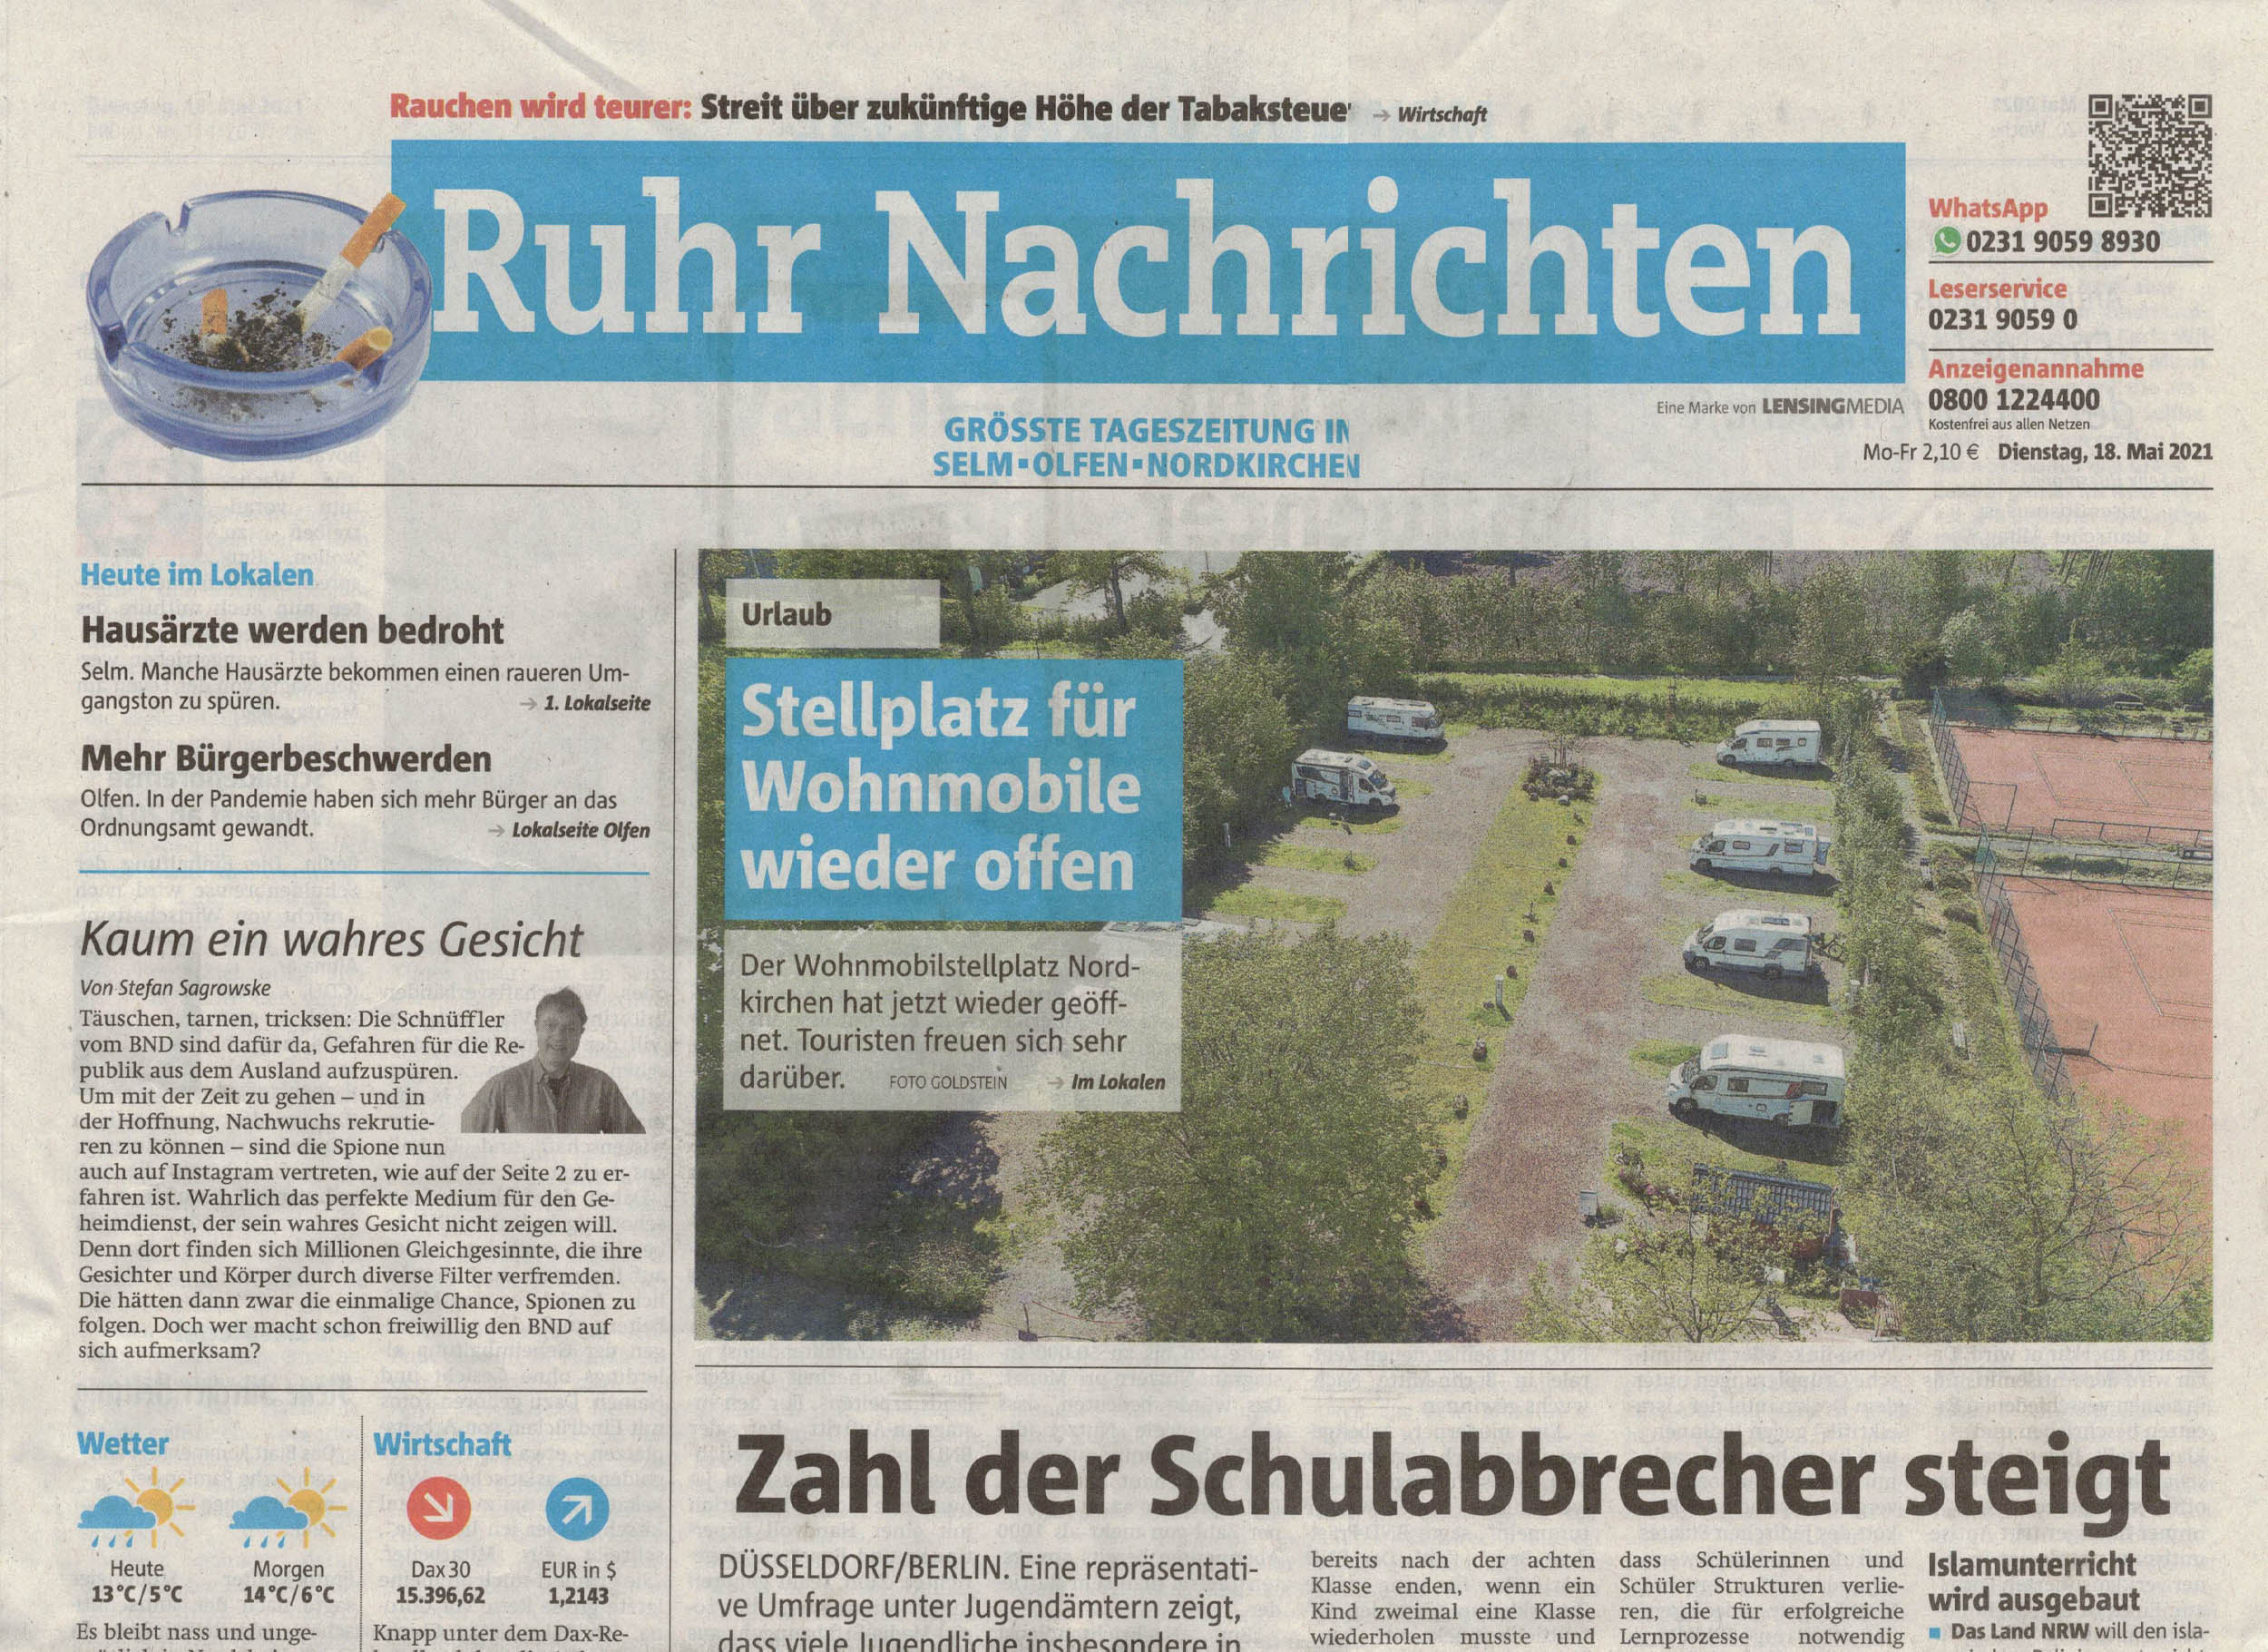 Ruhrnachrichten - Titelseite vom 18. Mai 2021